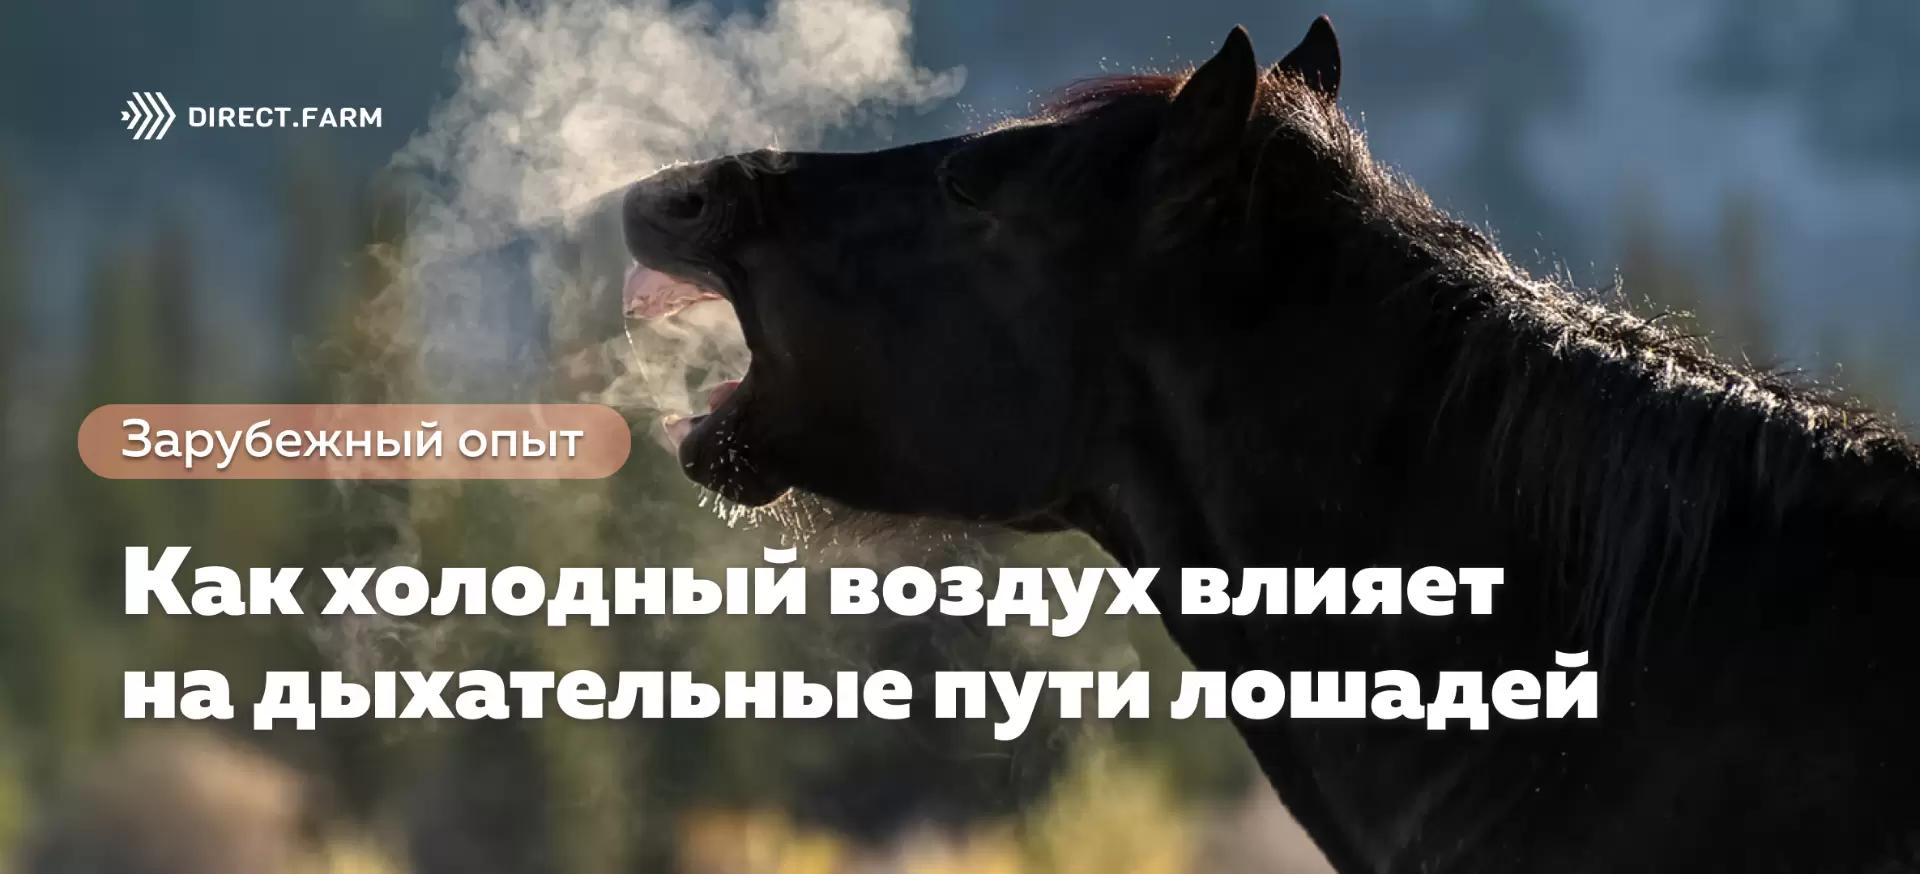 Как холодный воздух влияет на дыхательные пути лошадей